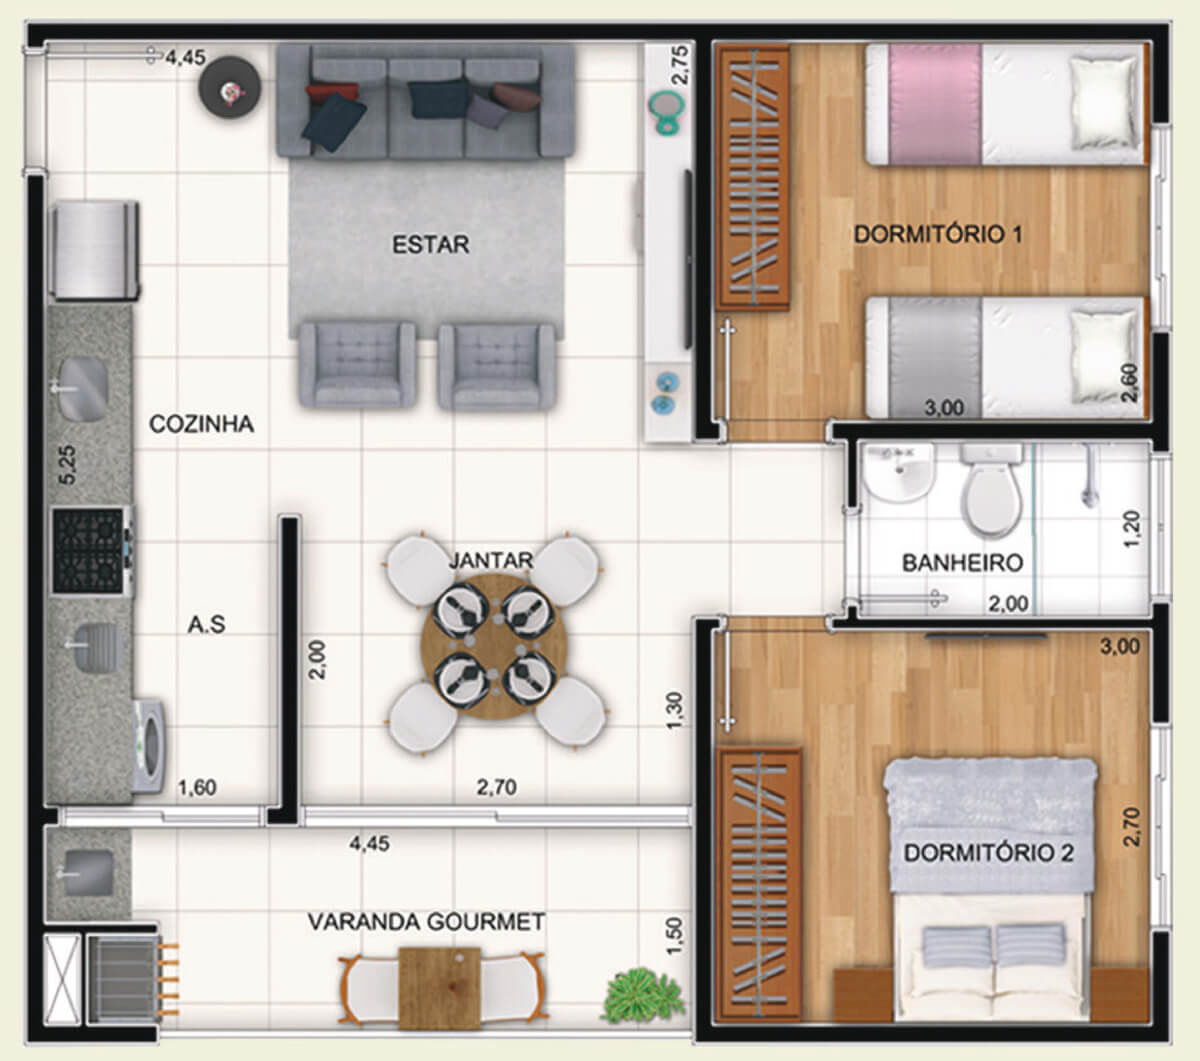 Apartamentos de 2 Dormitórios com churrasqueira | Portal do Nobre